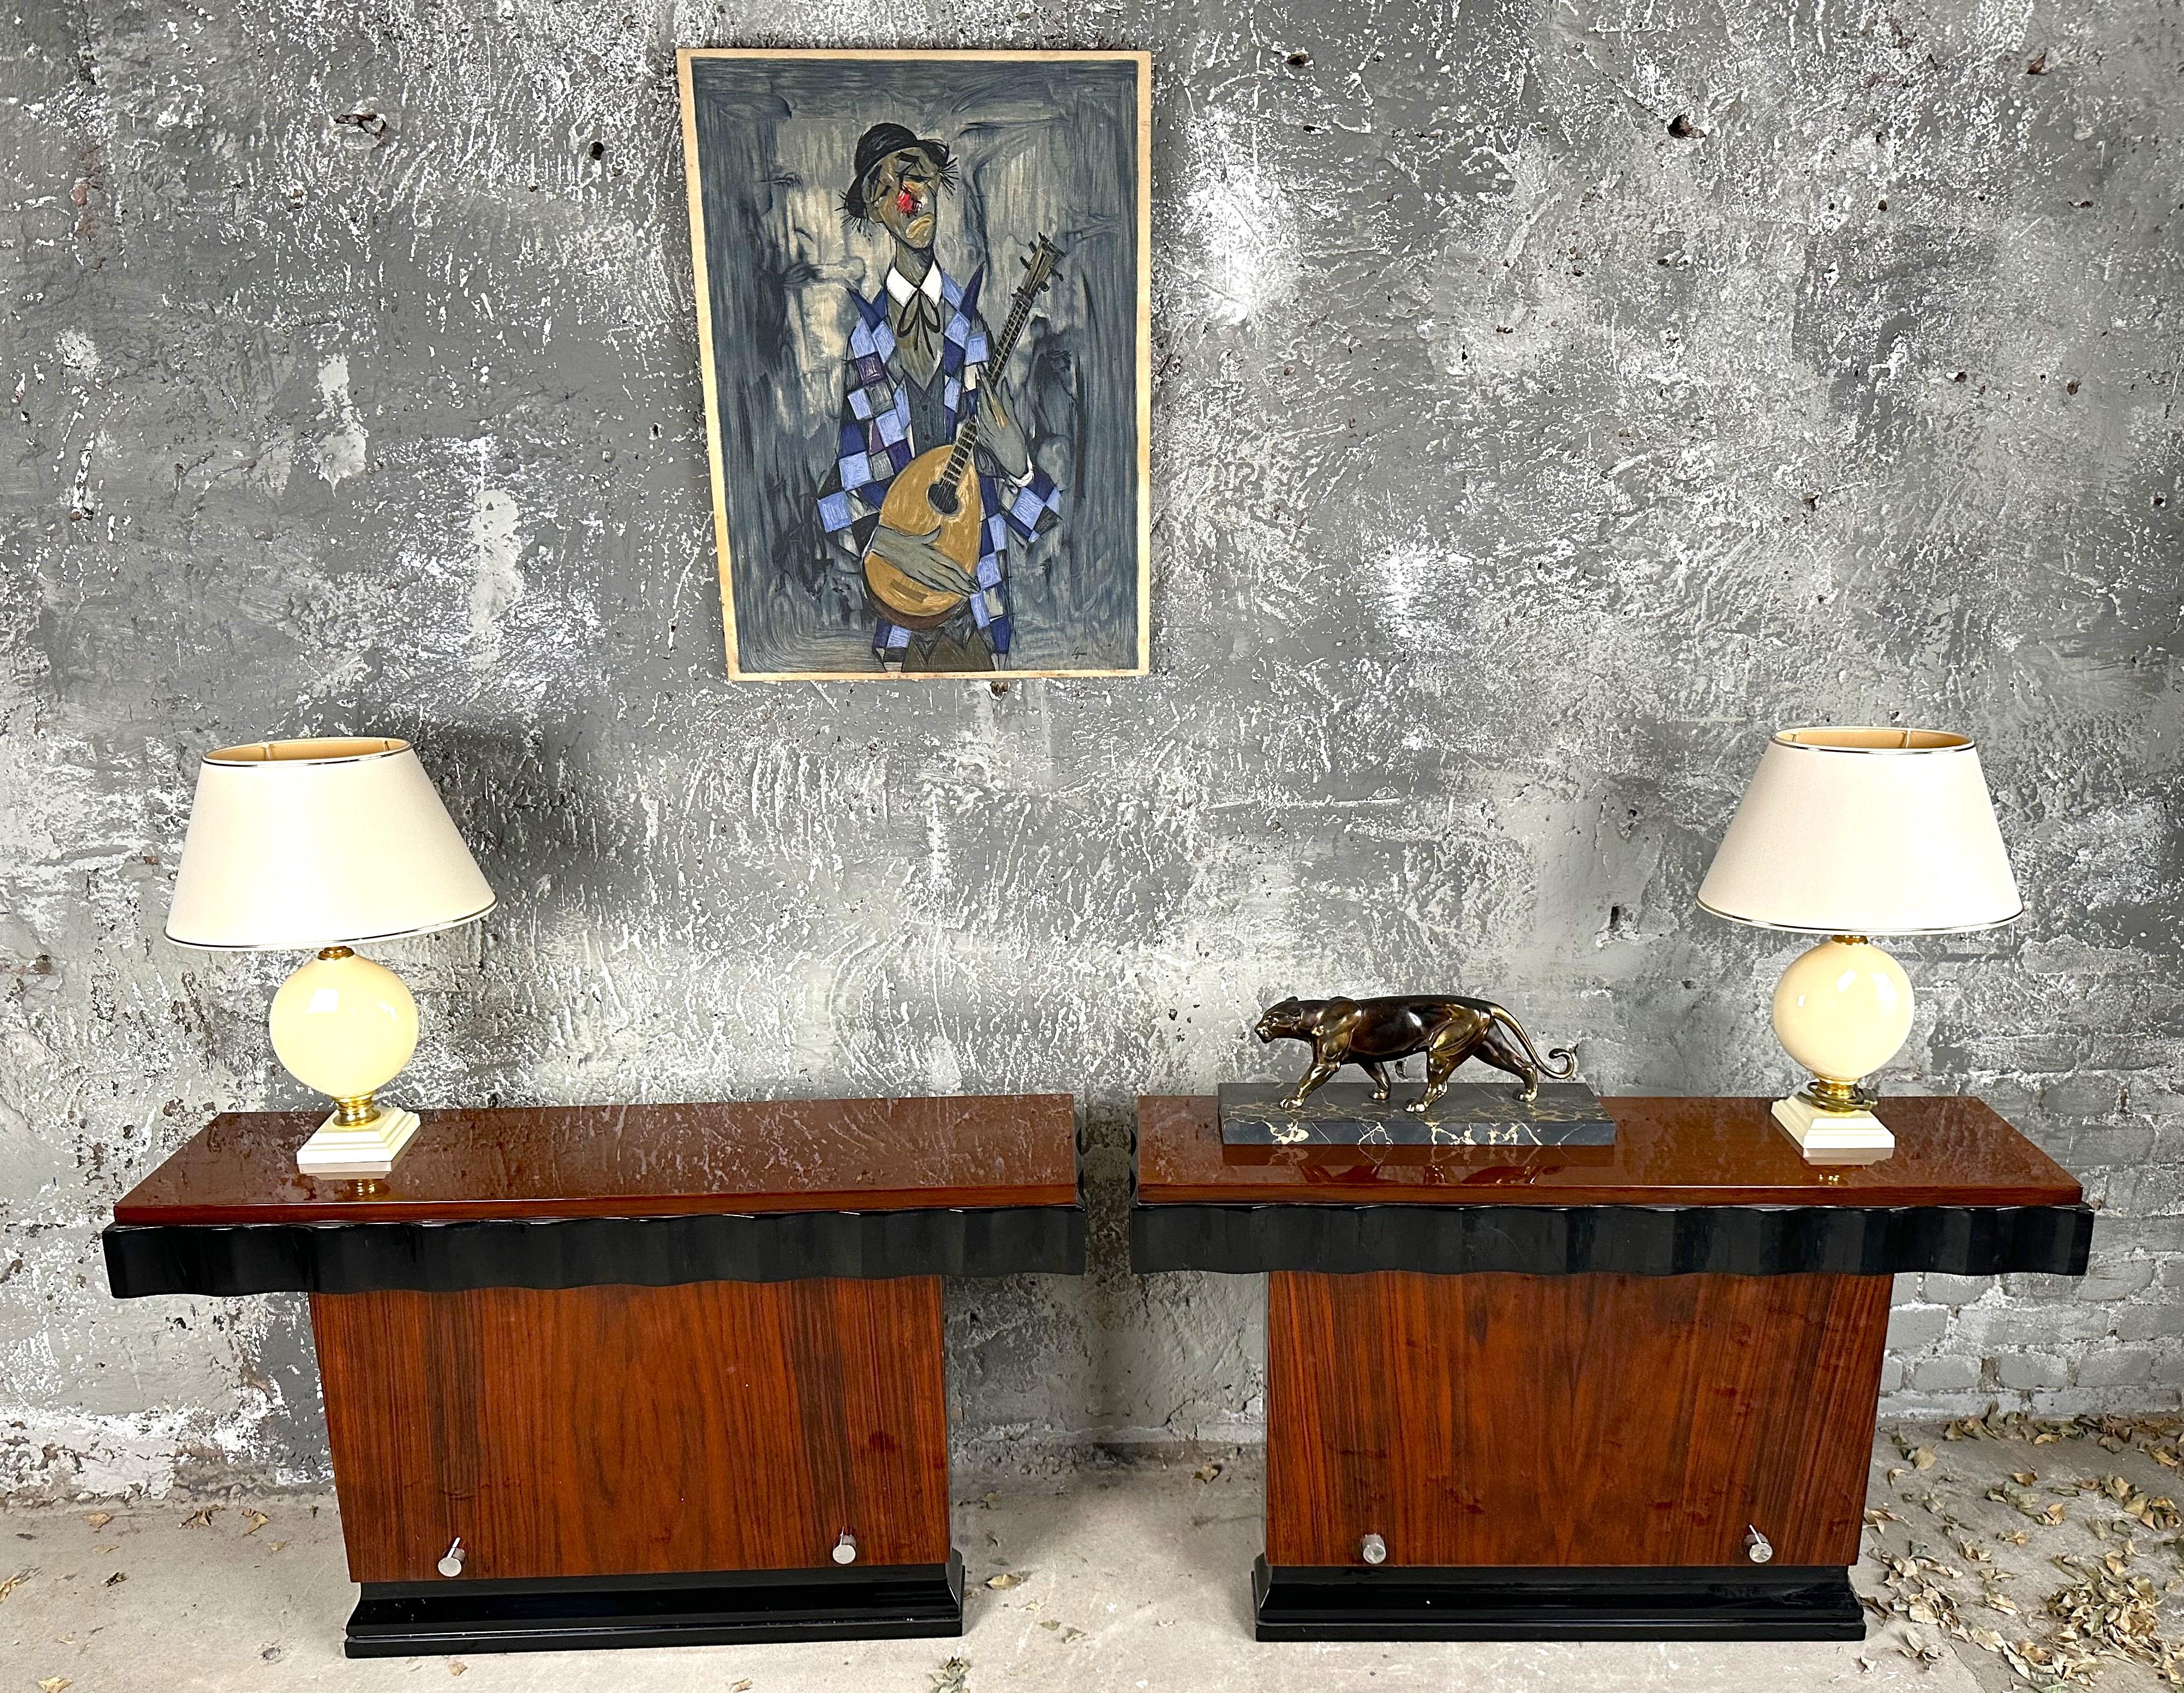 Art Deco Konsolentischpaar von Kristian Krass, Frankreich 1935.
hohe Qualität, vollständig restauriert, hochglänzend lackiert, handpoliert.
Chromdetails in perfektem Zustand.
Dokumentation siehe Bild aus der Drouot-Auktion.